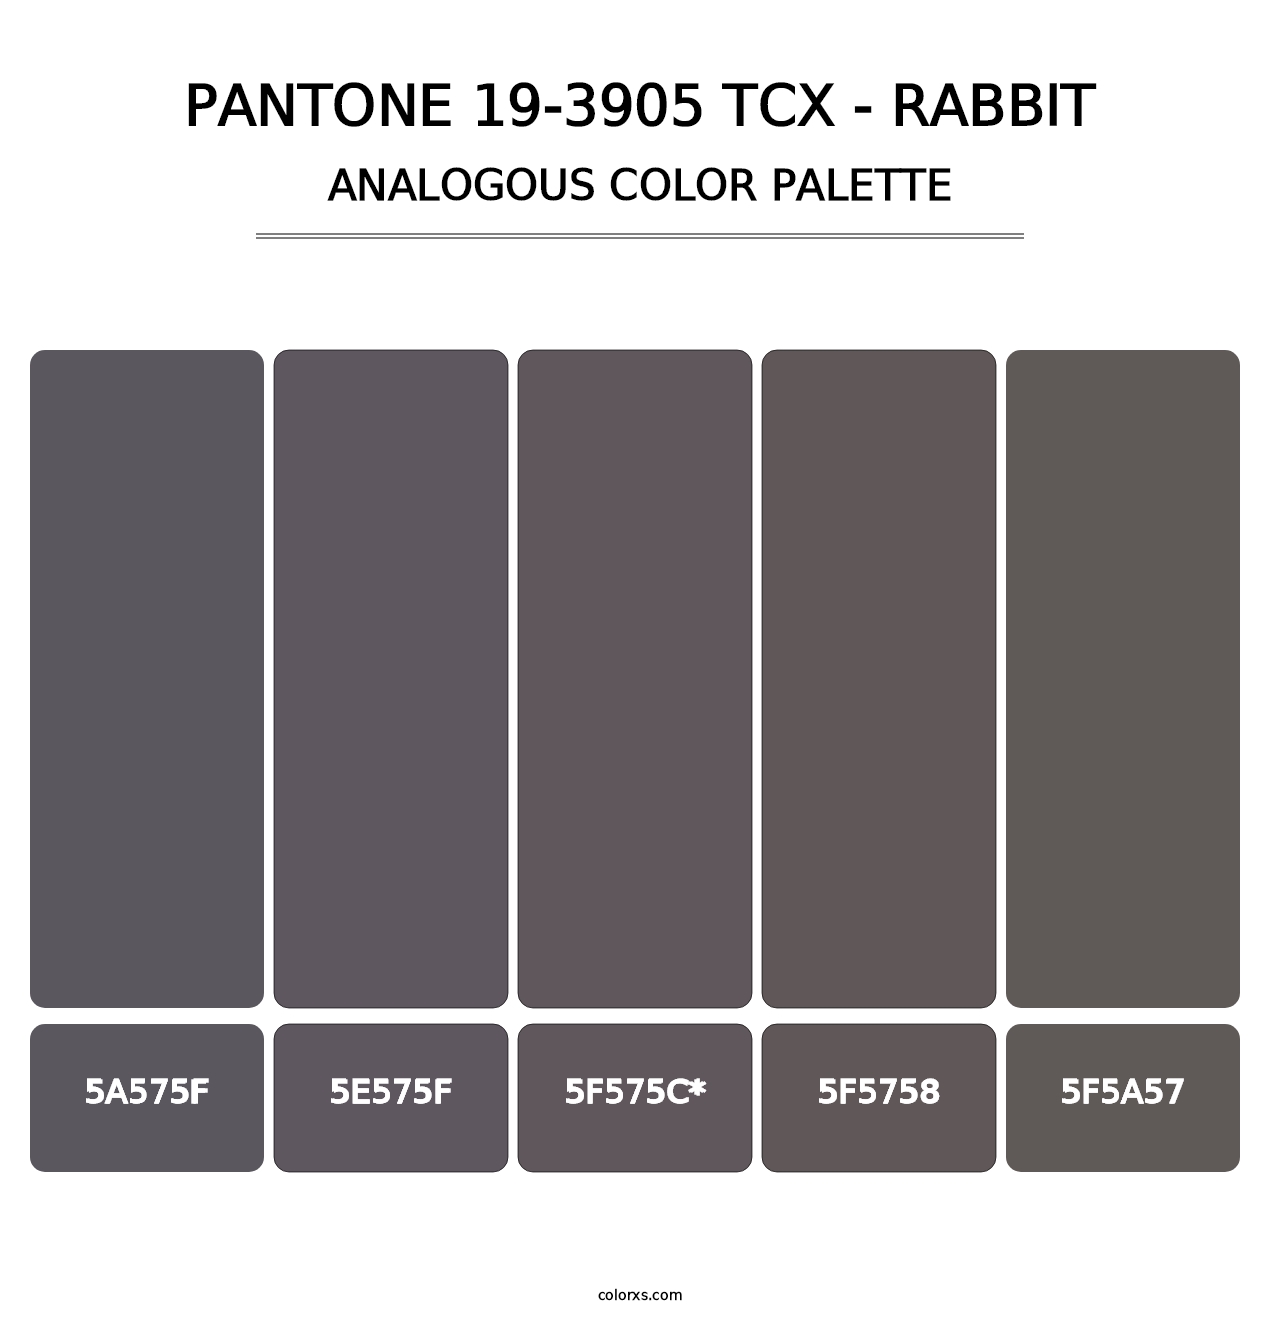 PANTONE 19-3905 TCX - Rabbit - Analogous Color Palette